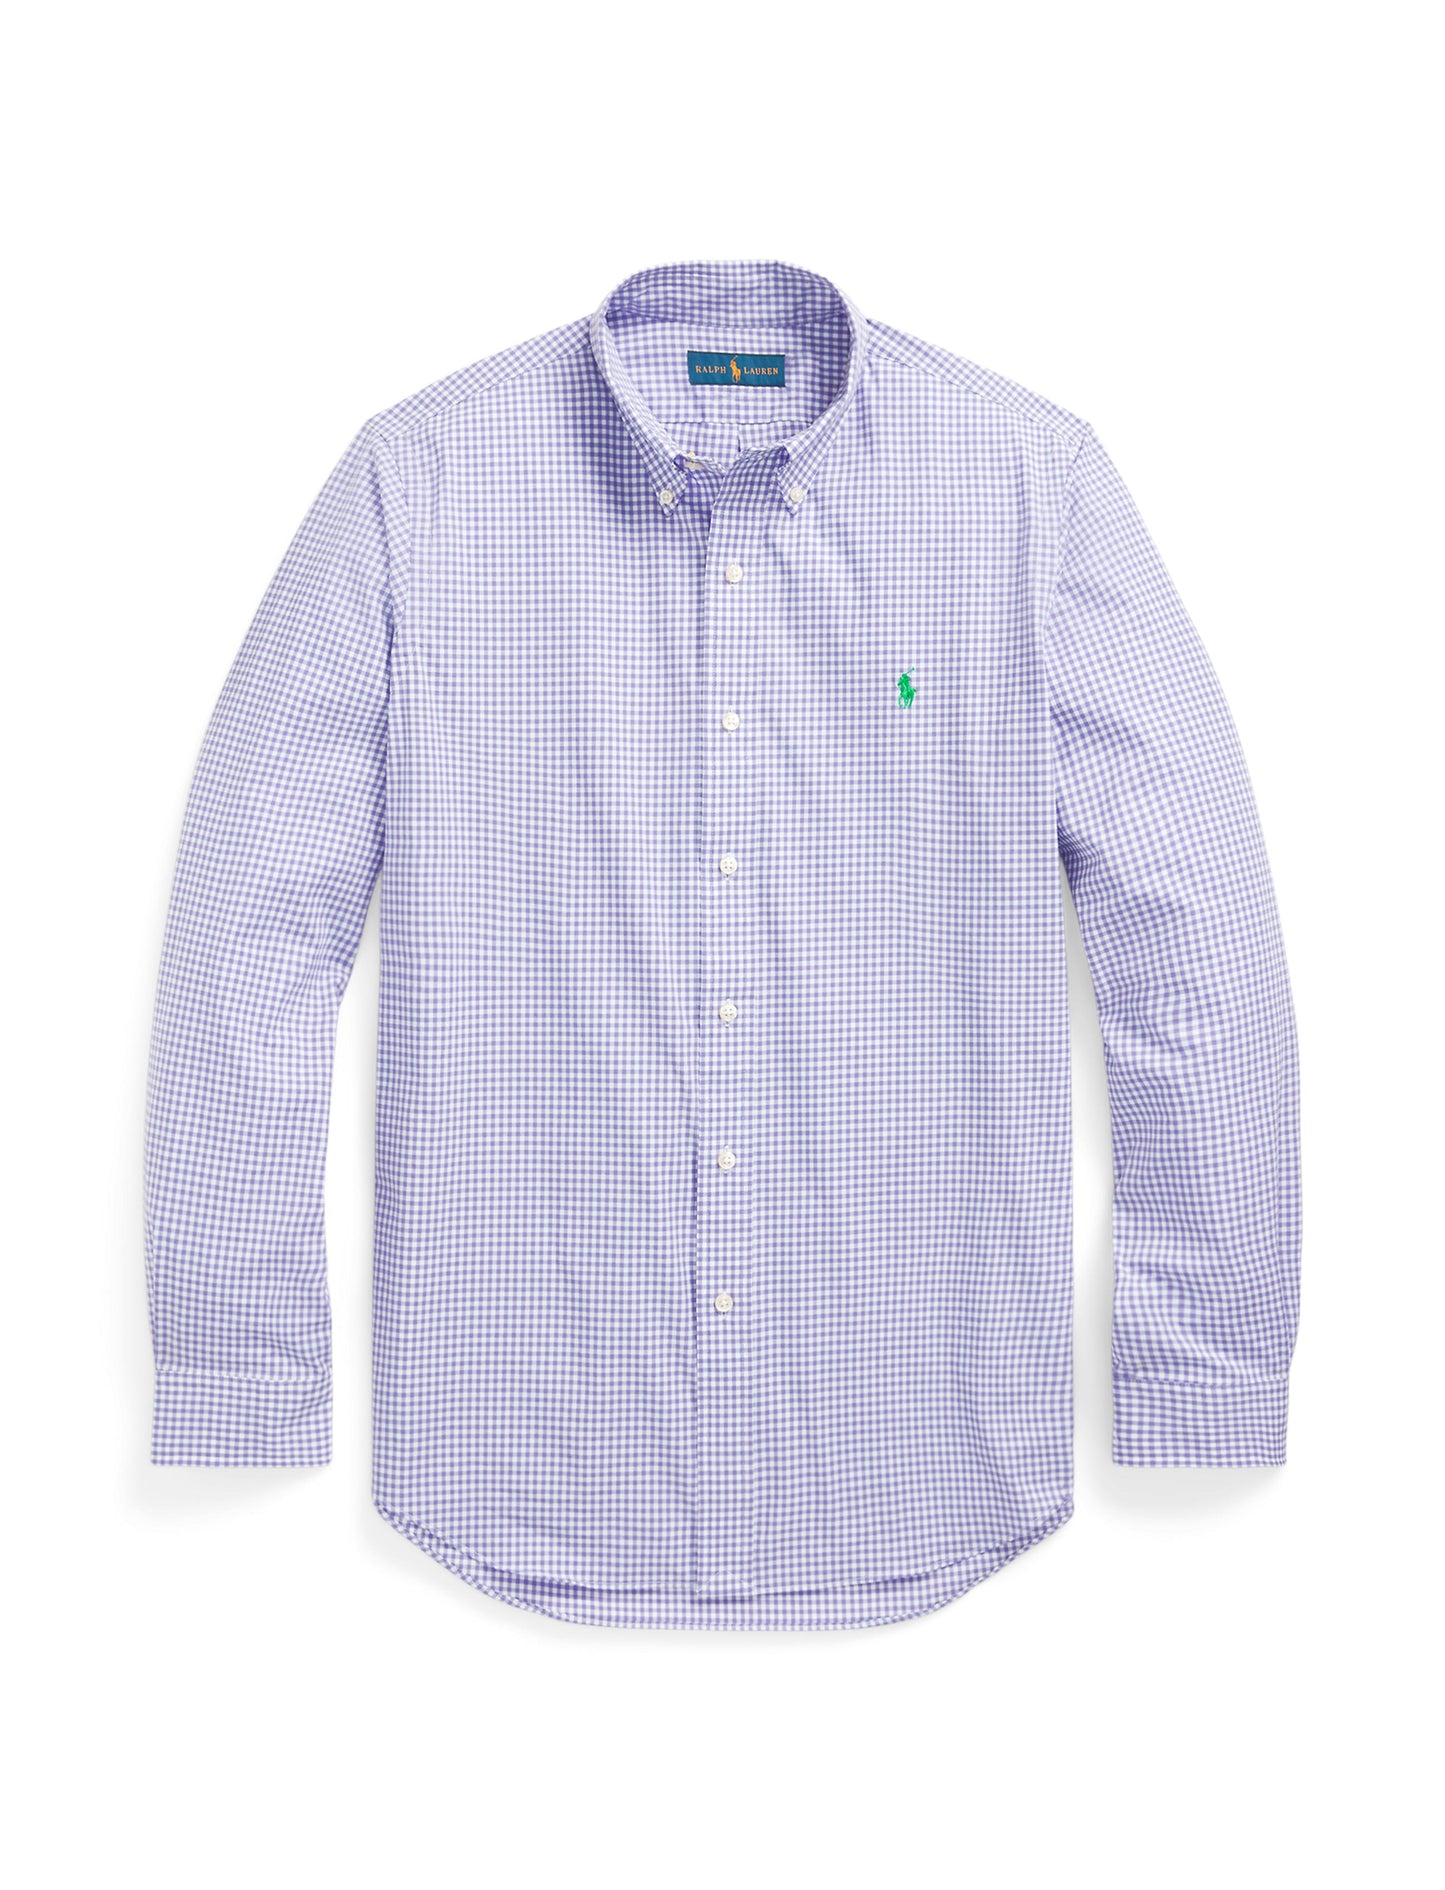 Polo Ralph Lauren Custom Fit Poplin Shirt Lavender/White